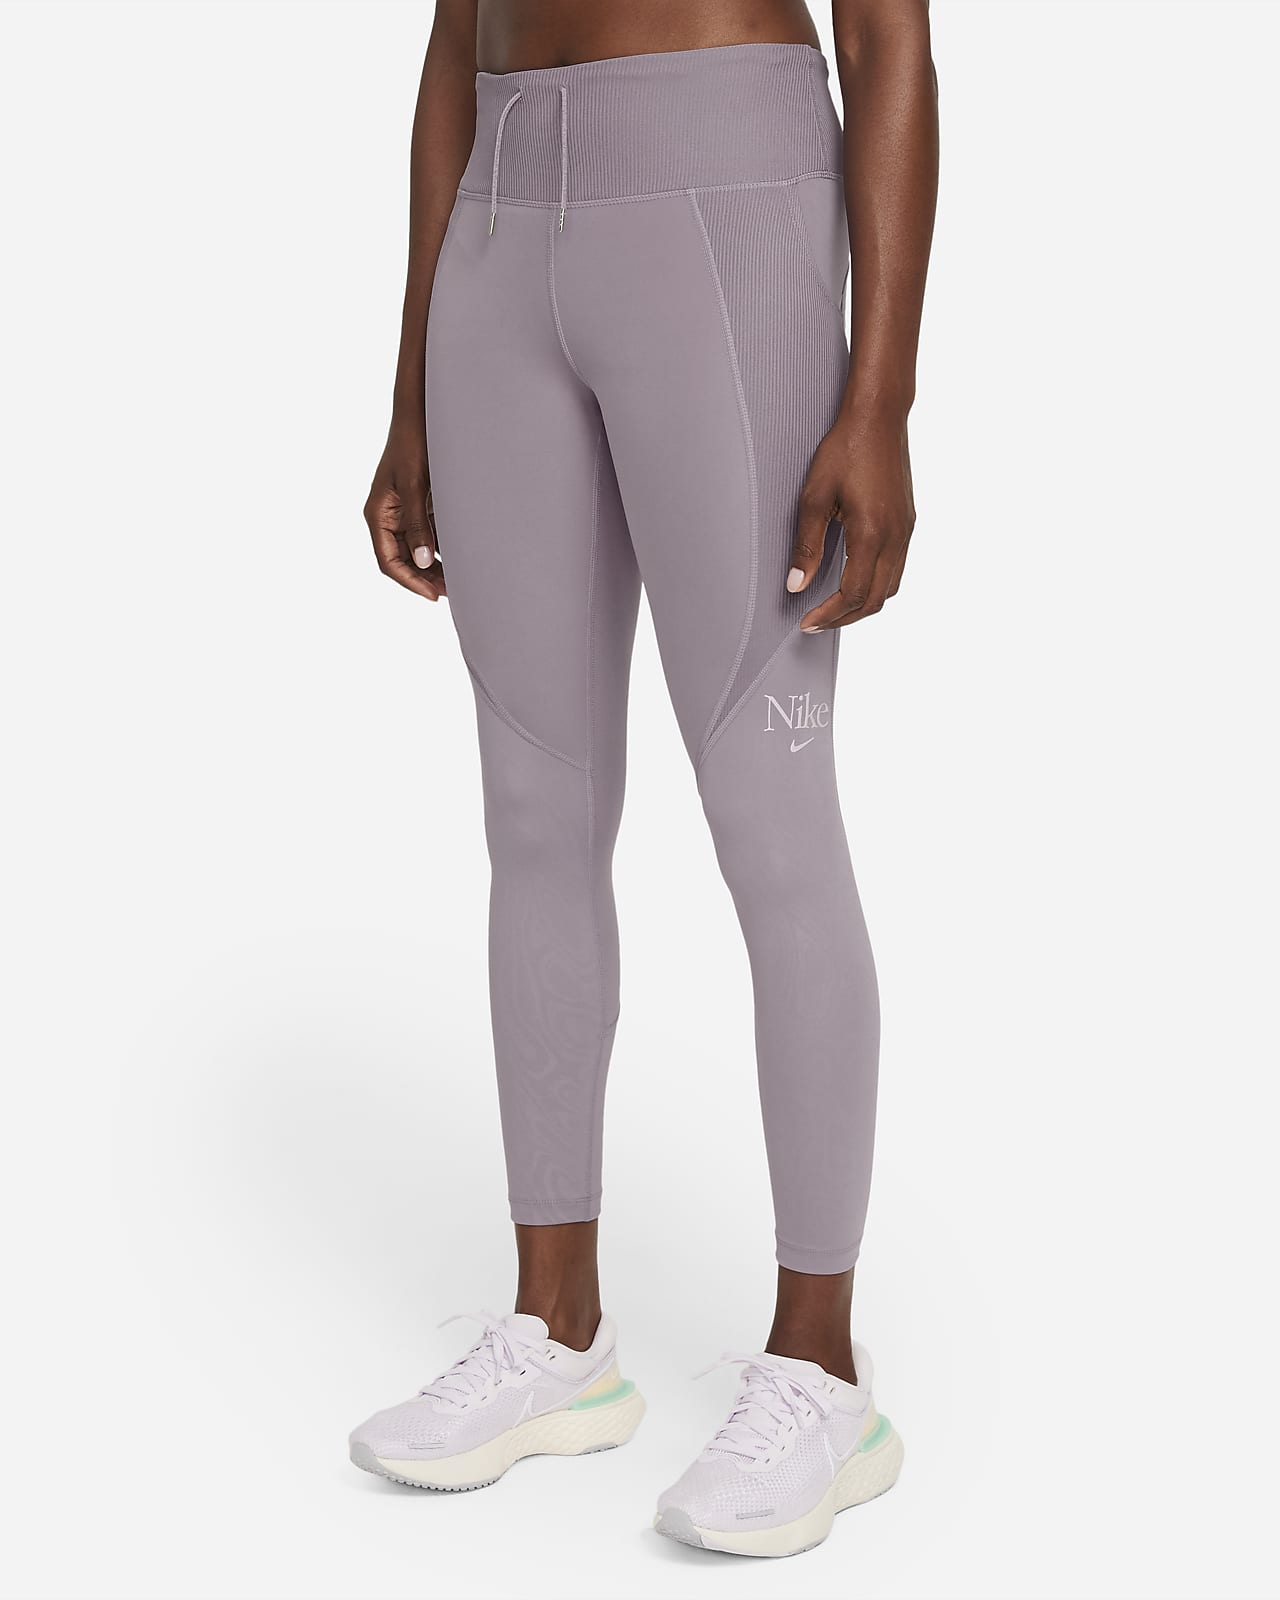 Nike Dri-FIT Fast 7/8 Women's Running Tights - Madder Root